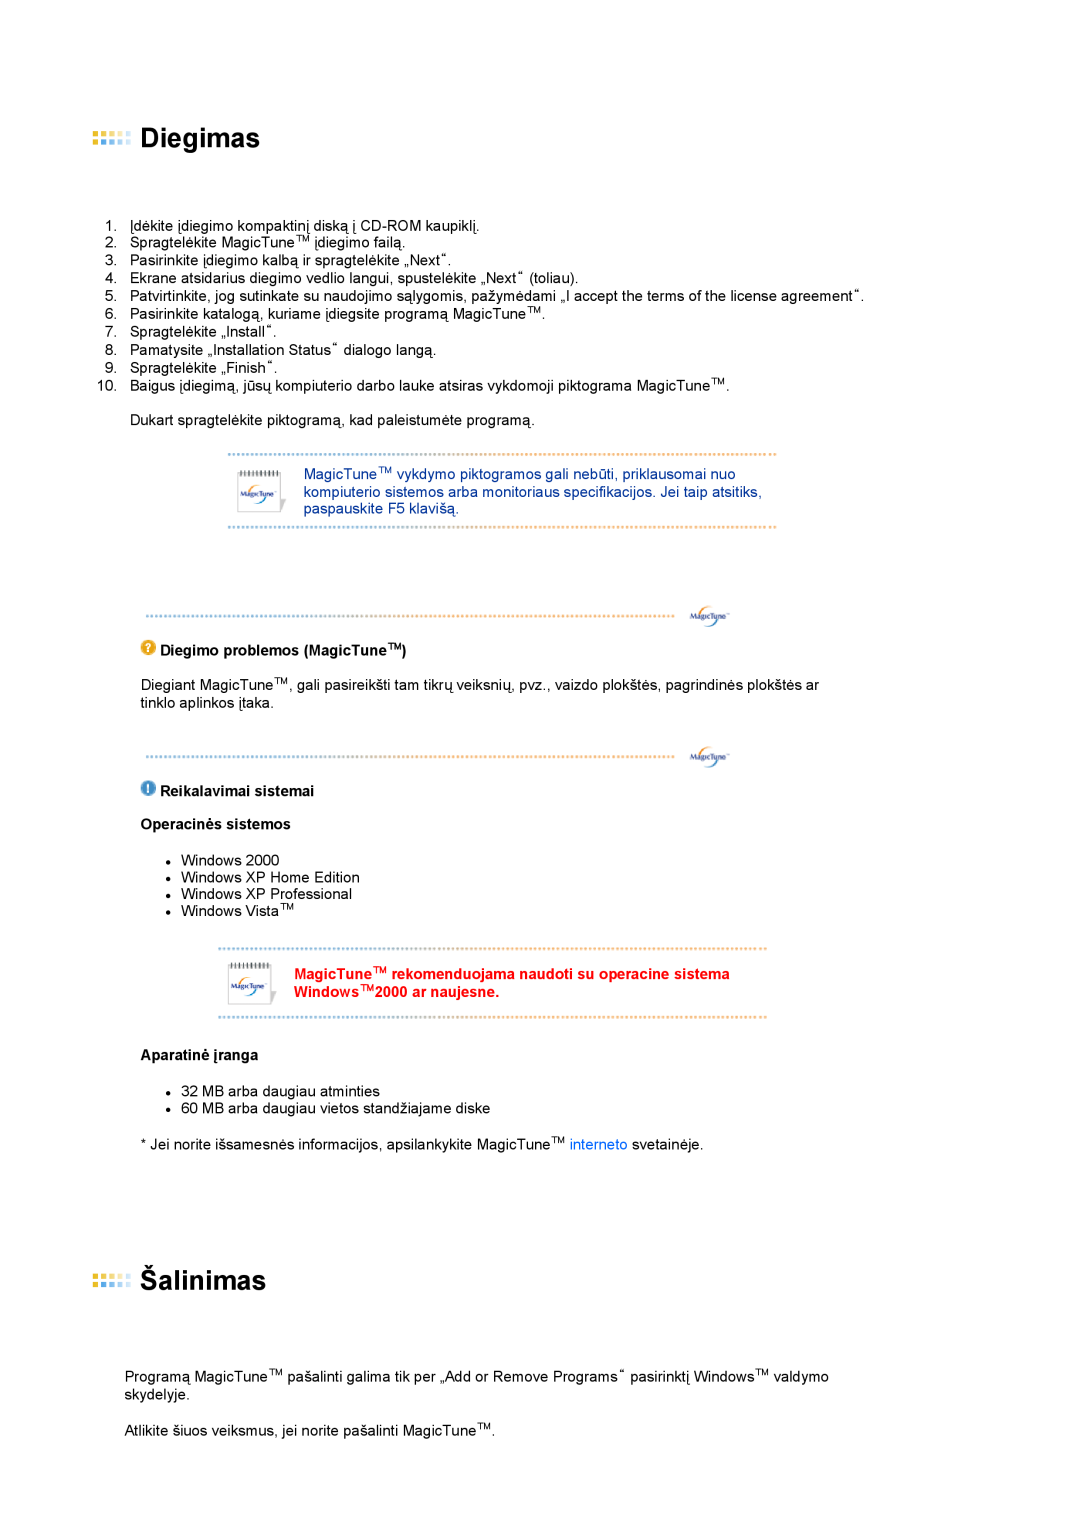 Samsung LS19PEBSBE/EDC manual Diegimas, Šalinimas, Diegimo problemos MagicTune, Reikalavimai sistemai Operacinės sistemos 